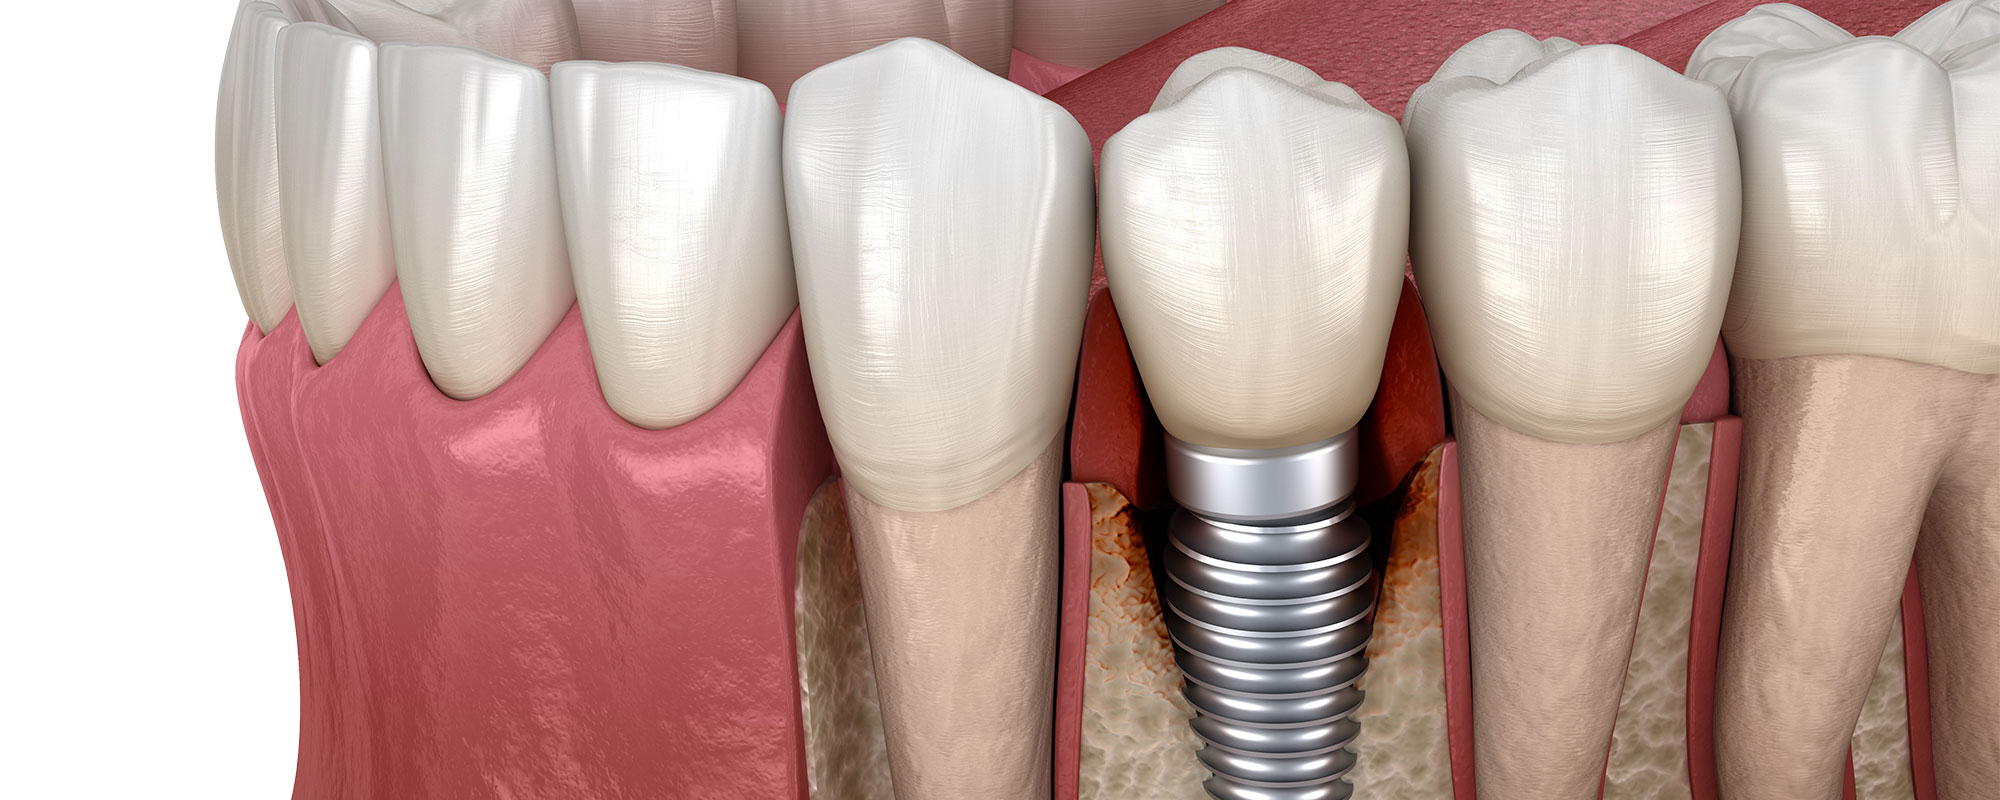 Имплант зуба заменитель